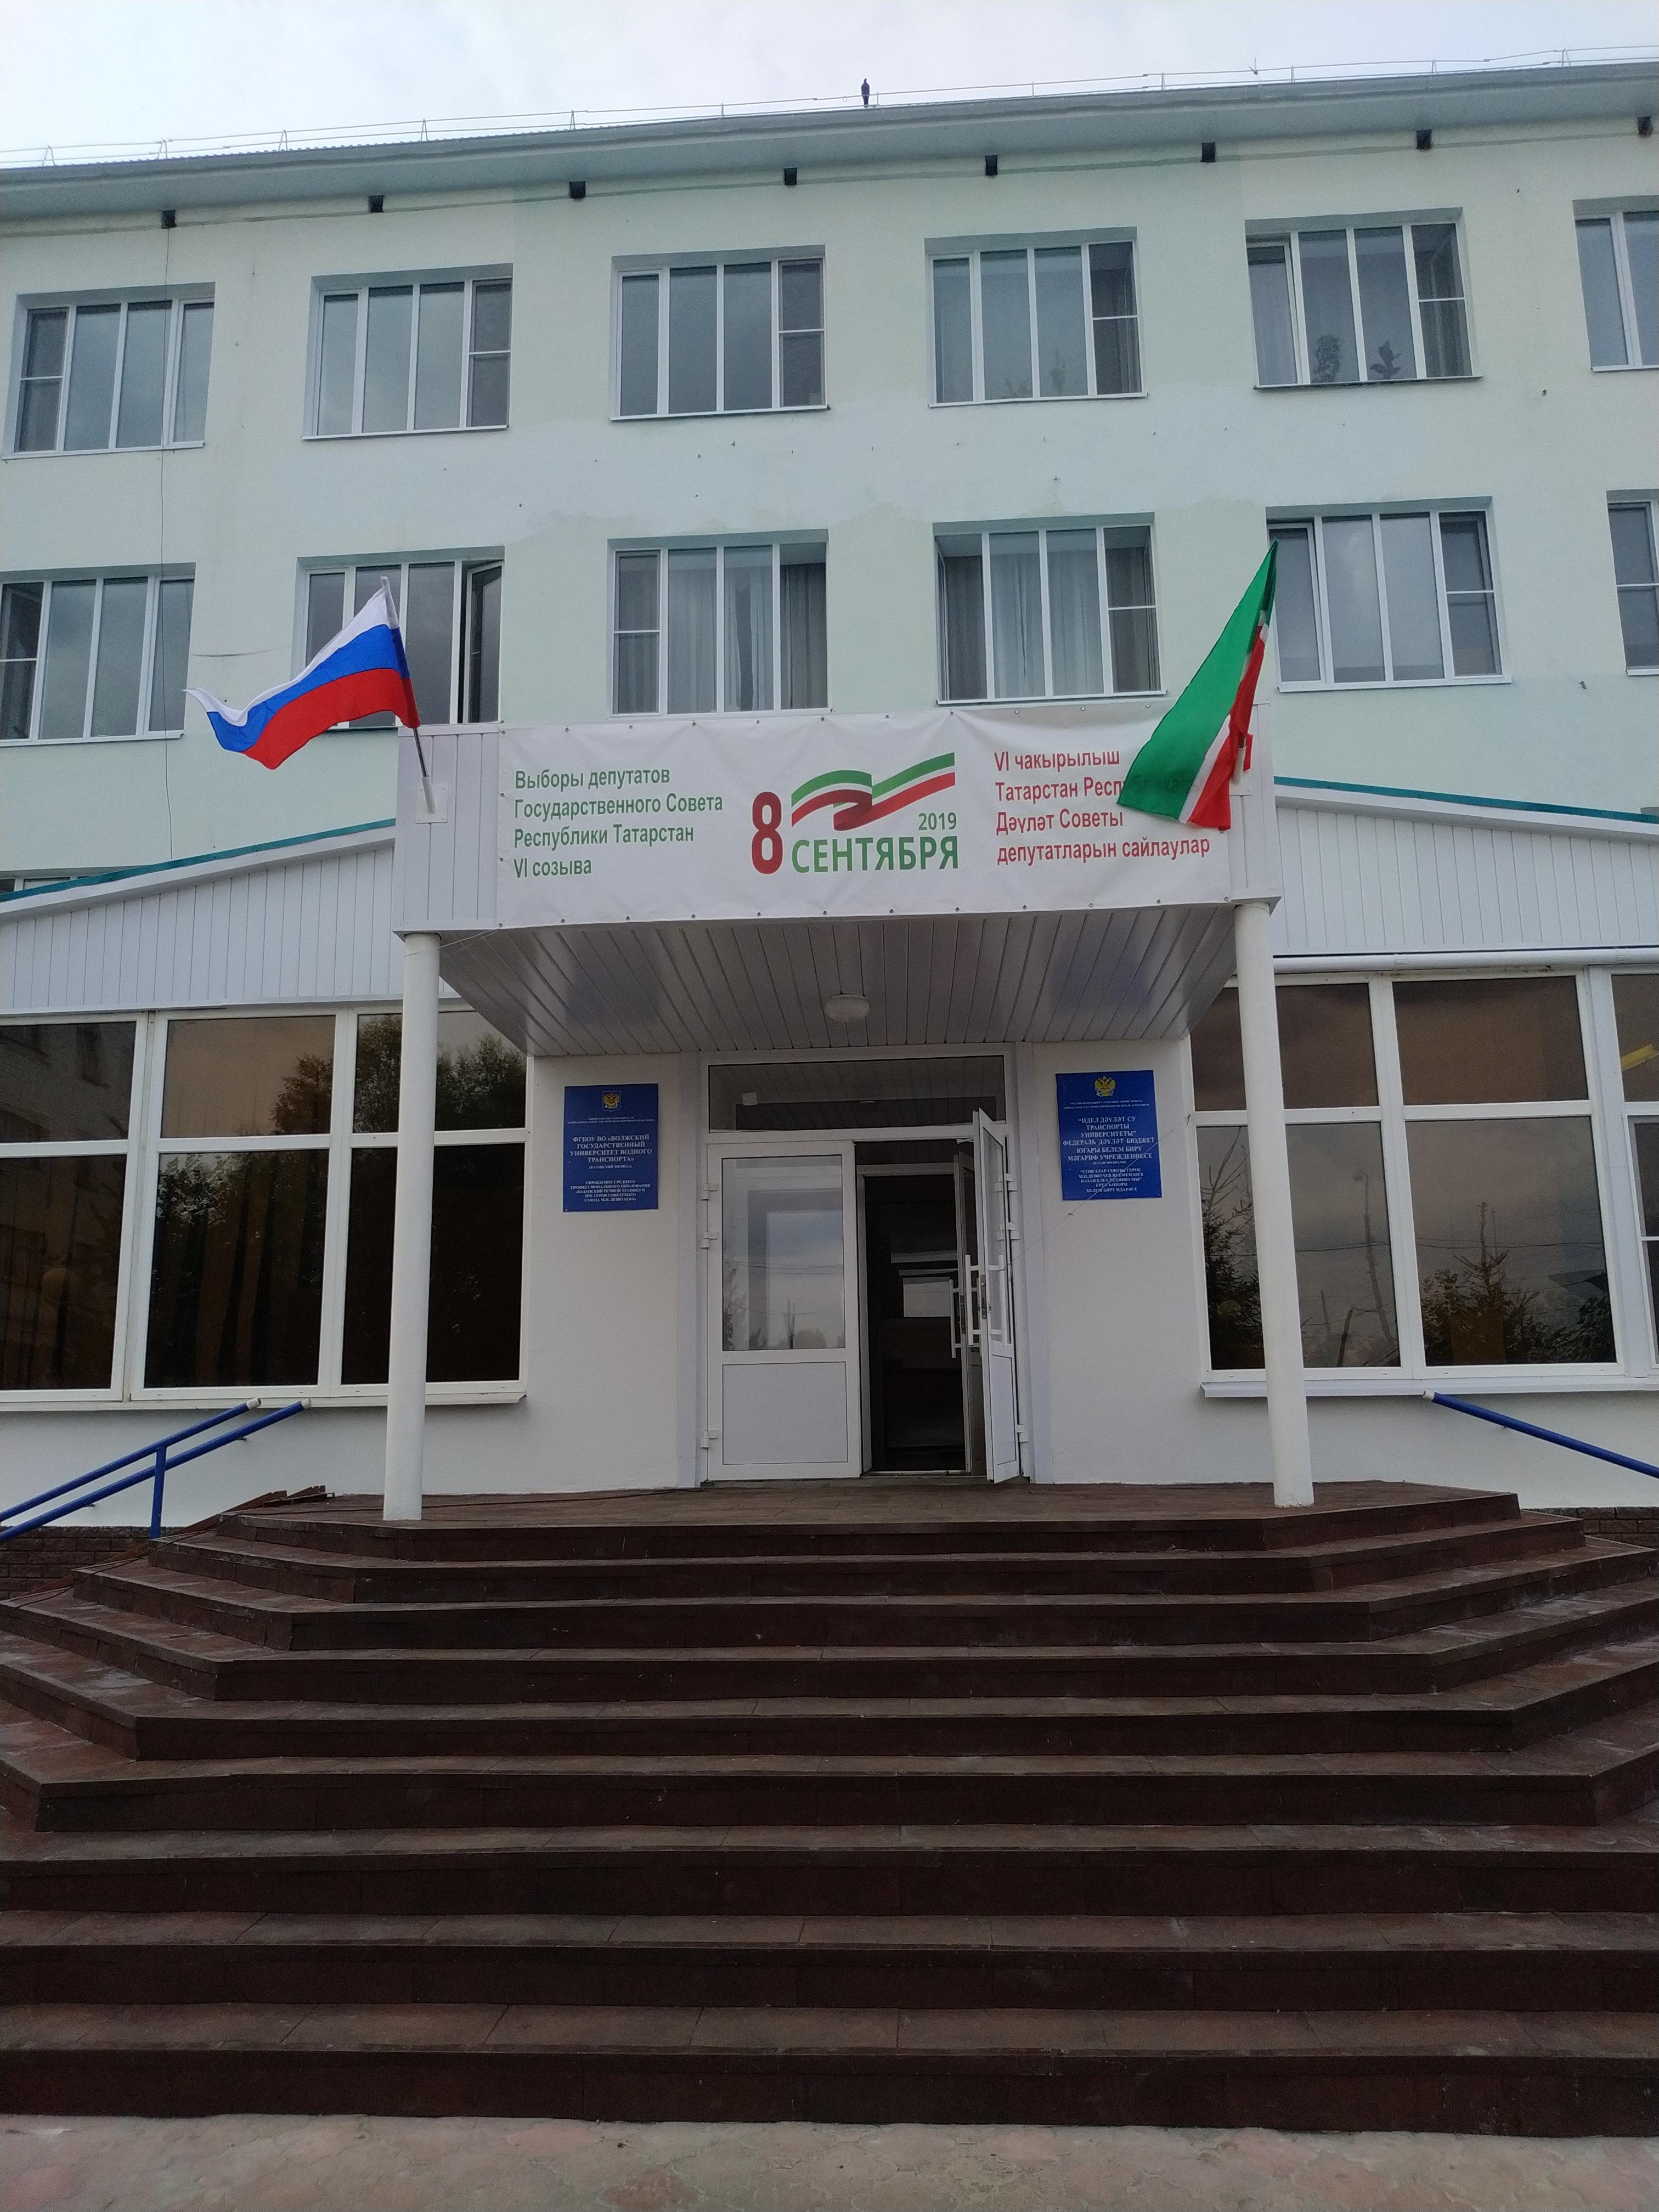 Выборы в Государственный совет Республики Татарстан 2019